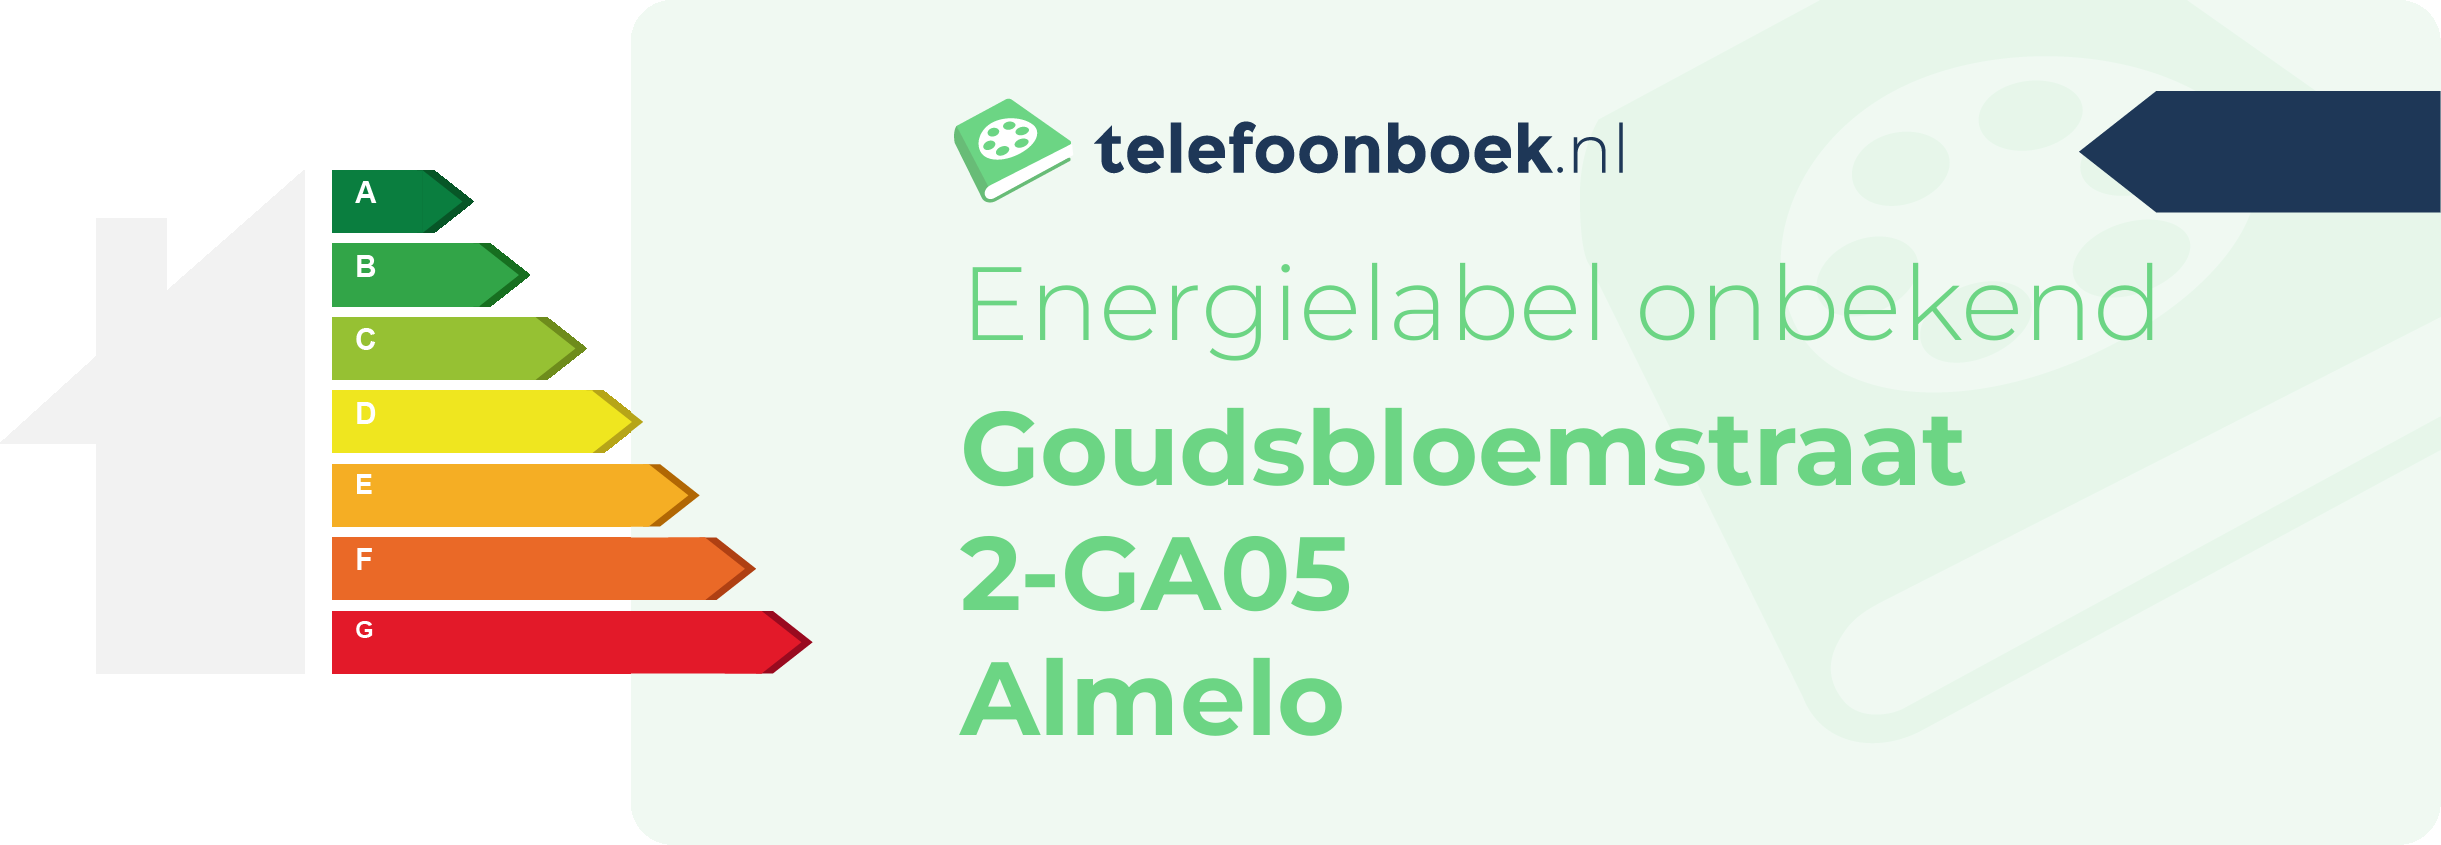 Energielabel Goudsbloemstraat 2-GA05 Almelo